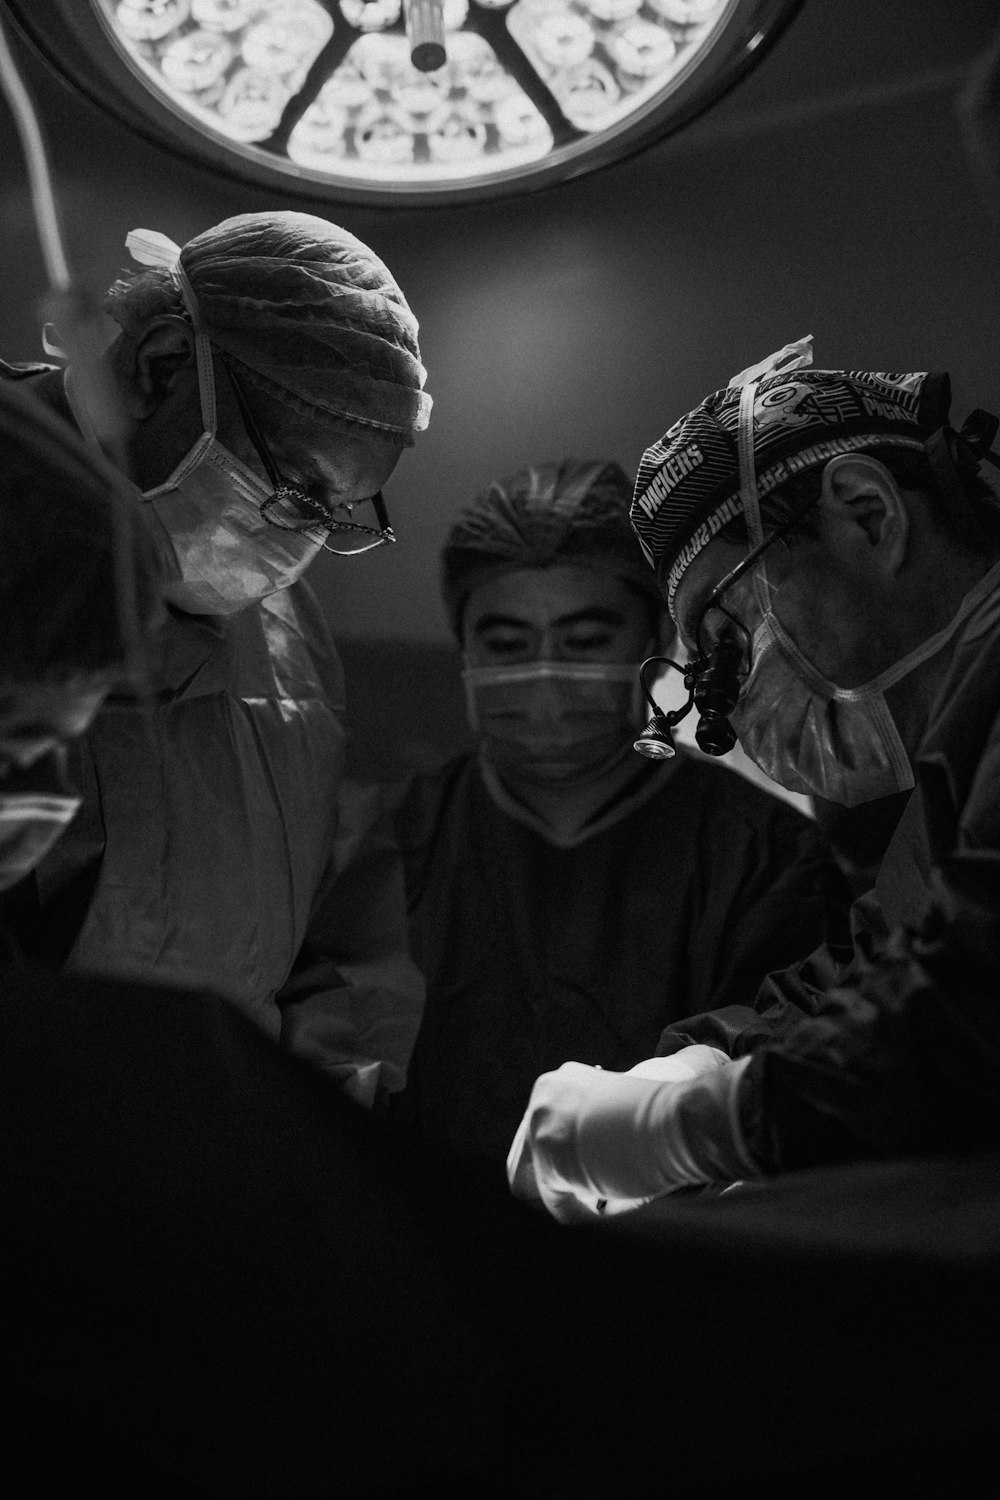 手術を行おうとしている3人の看護師と医師のグレースケール写真